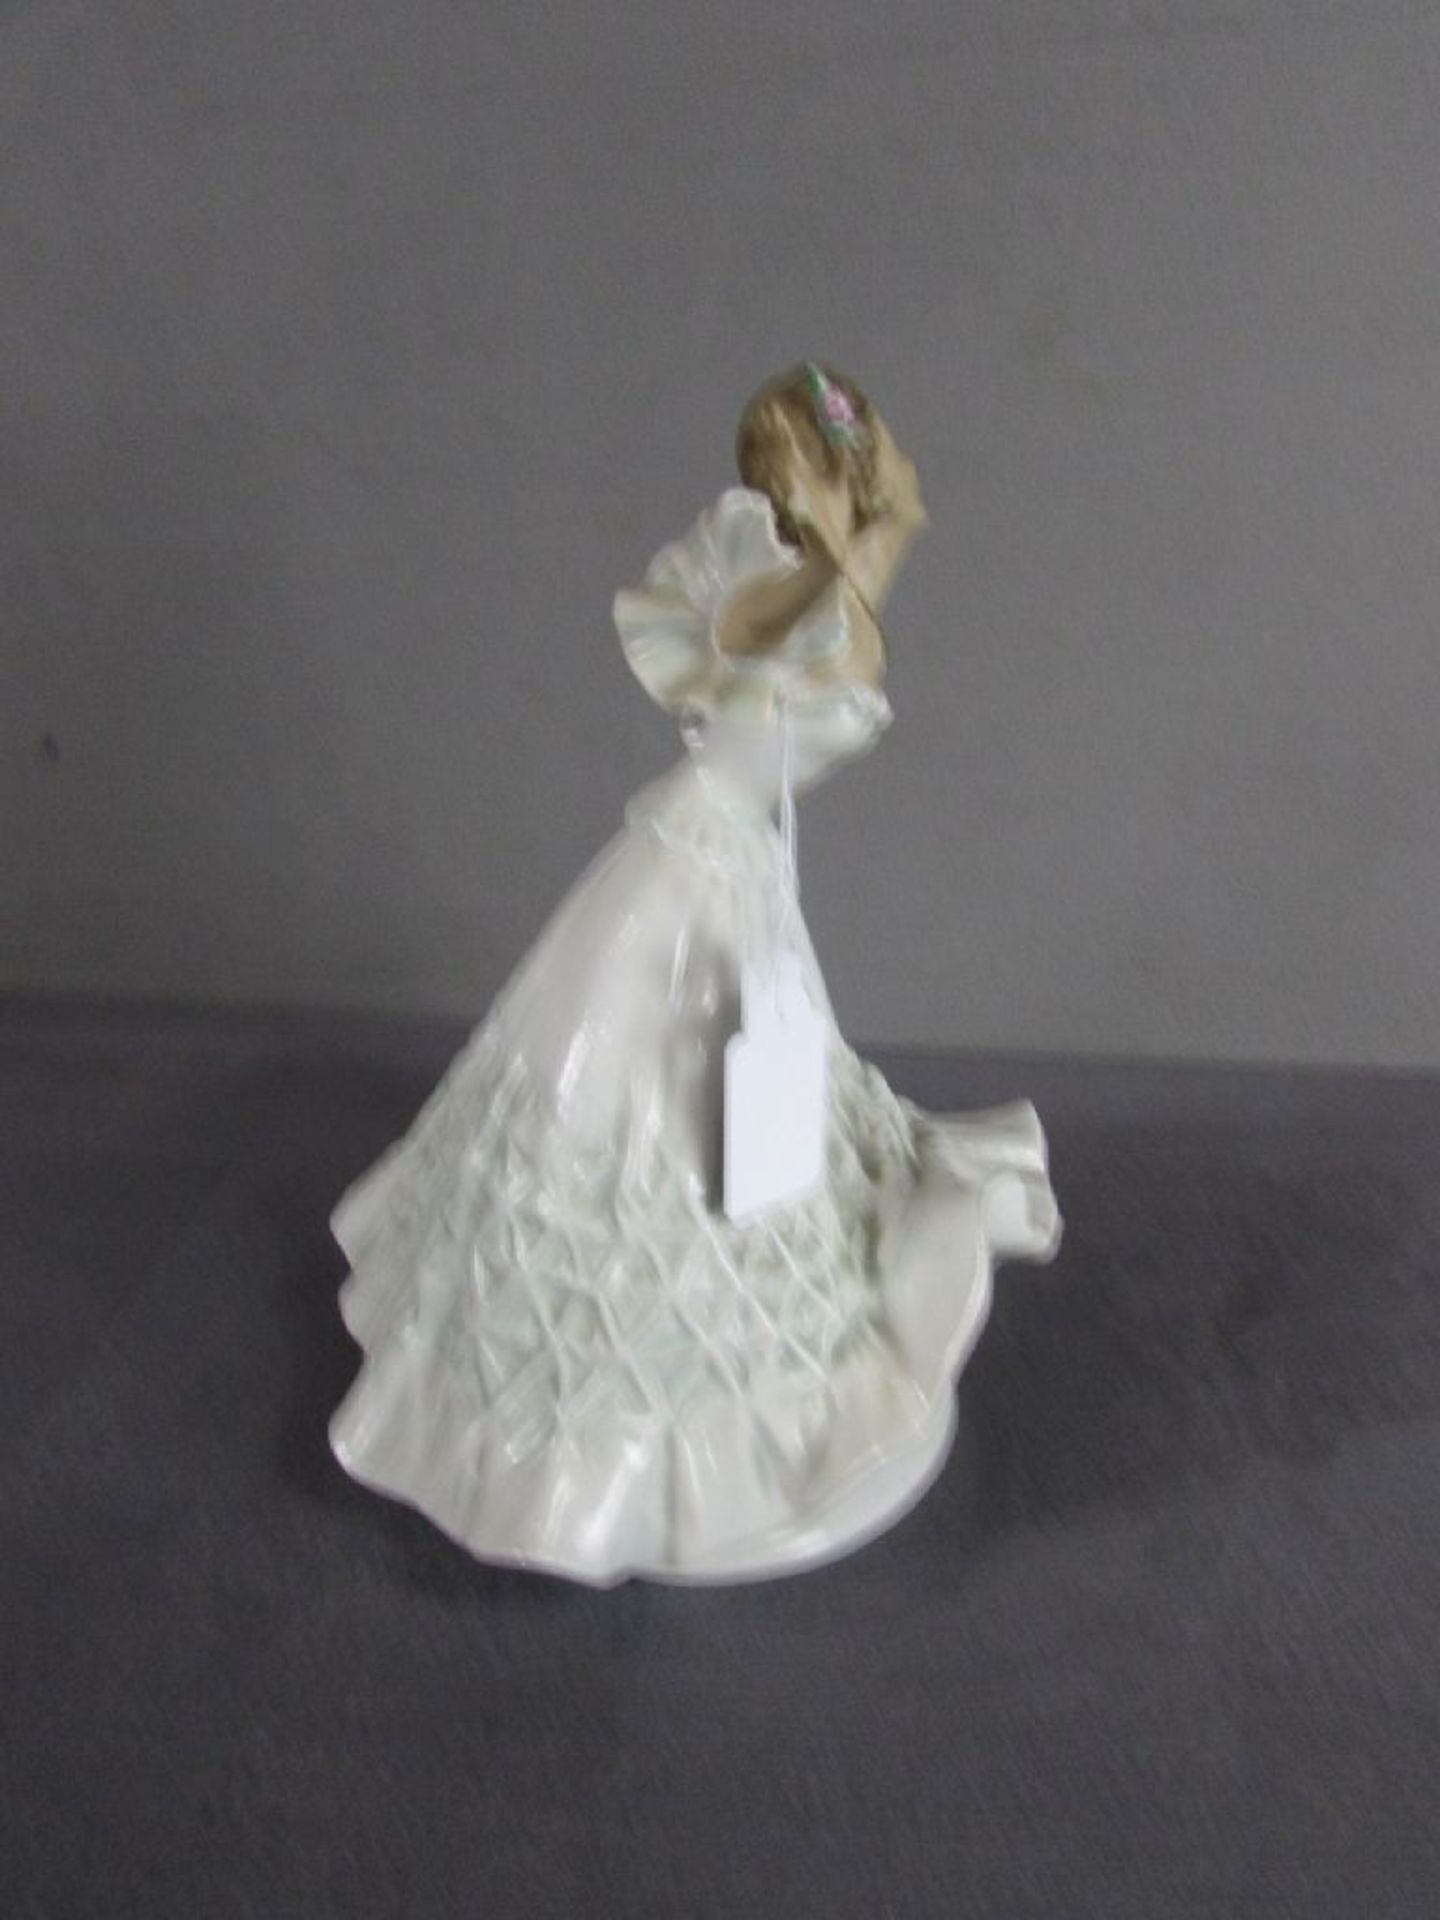 Porzellanfigur Tänzerin gemarkt ein Finger bestoßen 28cm hoch - Image 2 of 4